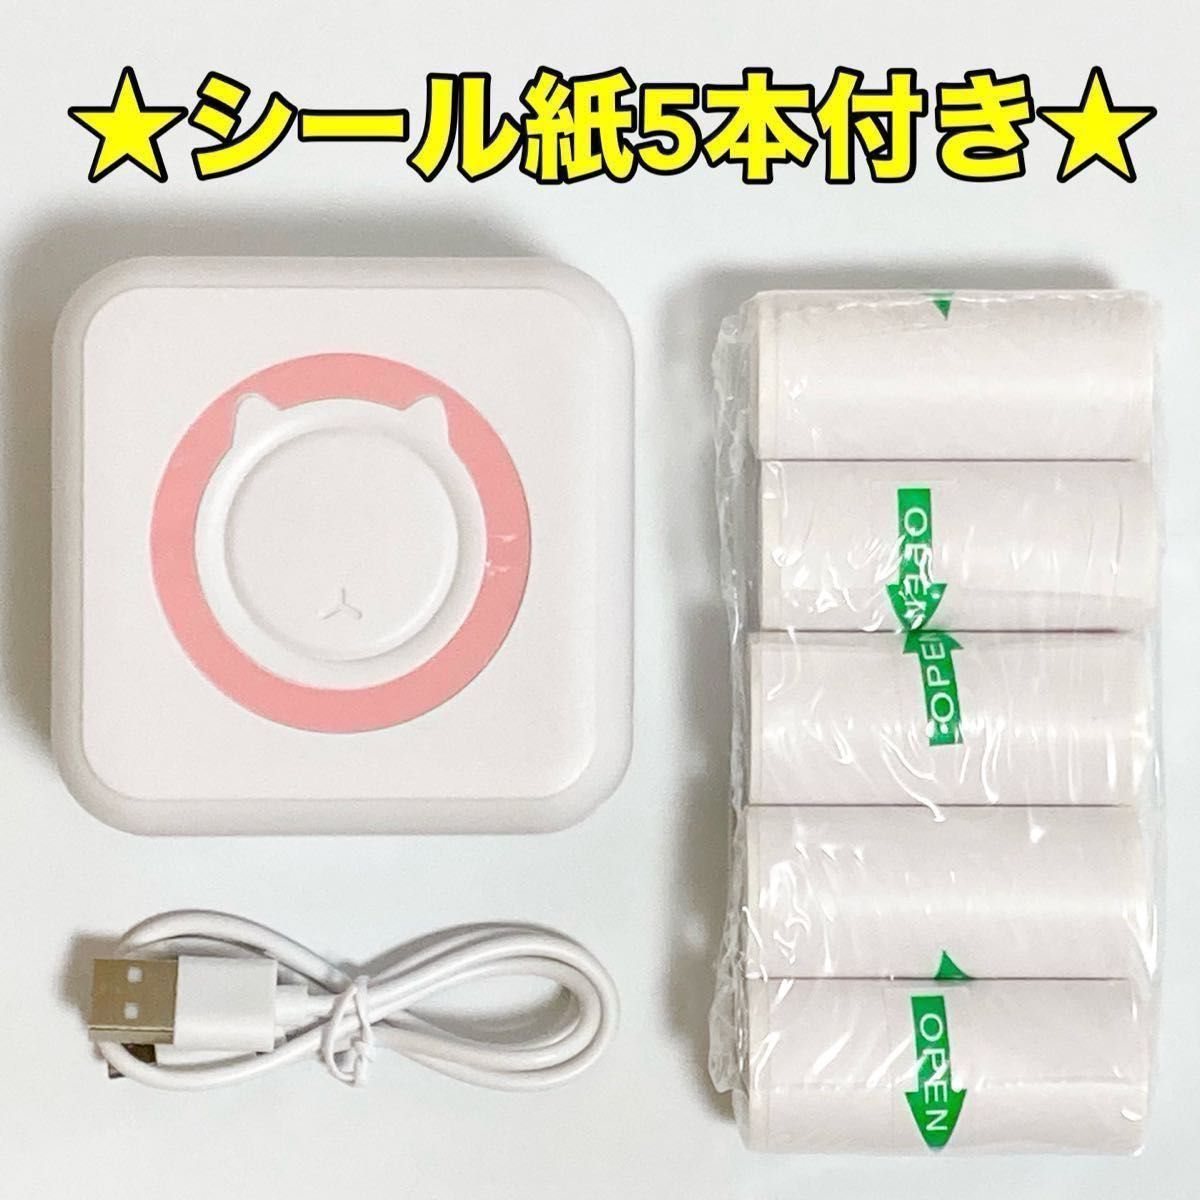 【新品】 ポータブル  ミニプリンター  ロール シール紙  5本付き ピンク